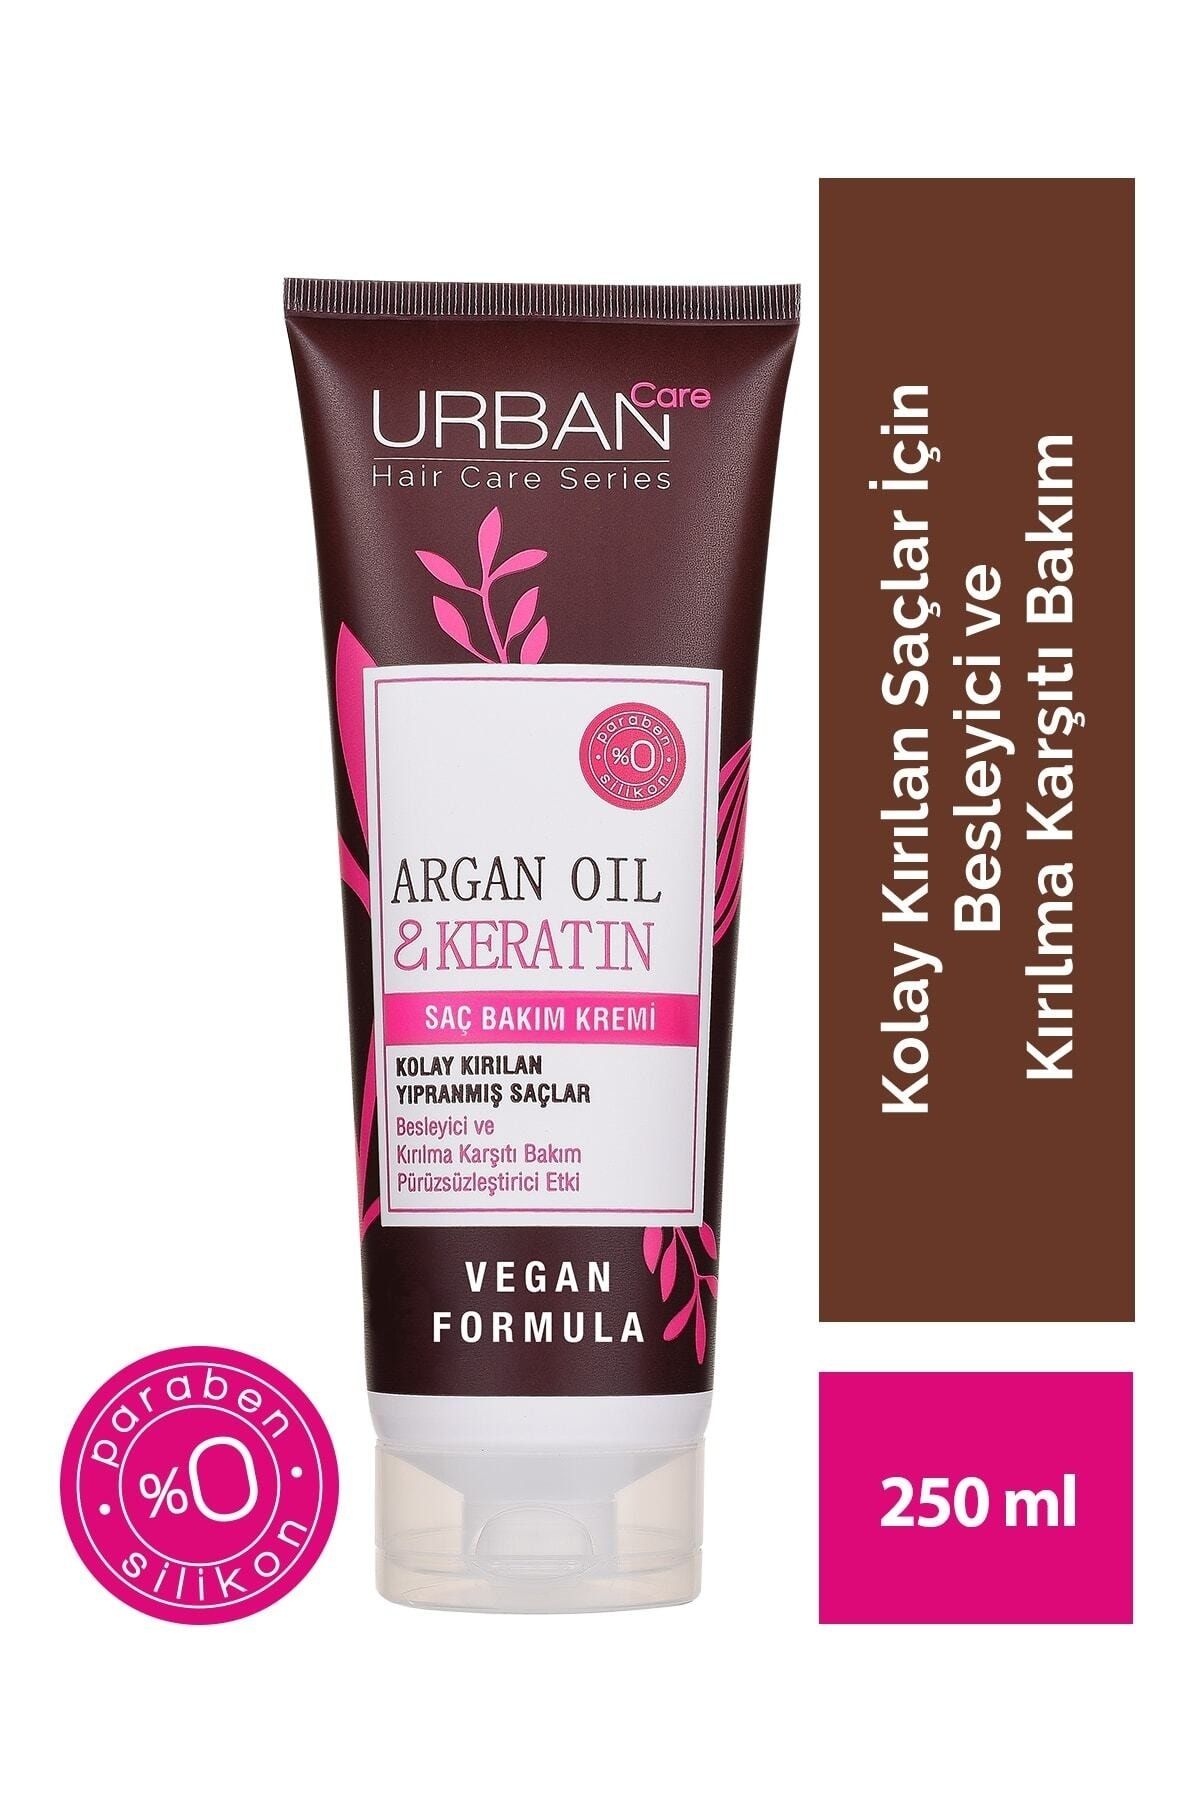 Urban Care Argan Yağı&keratin Kolay Kırılan Yıpranmış Saçlara Özel Saç Bakım Kremi-vegan Formül-250ml